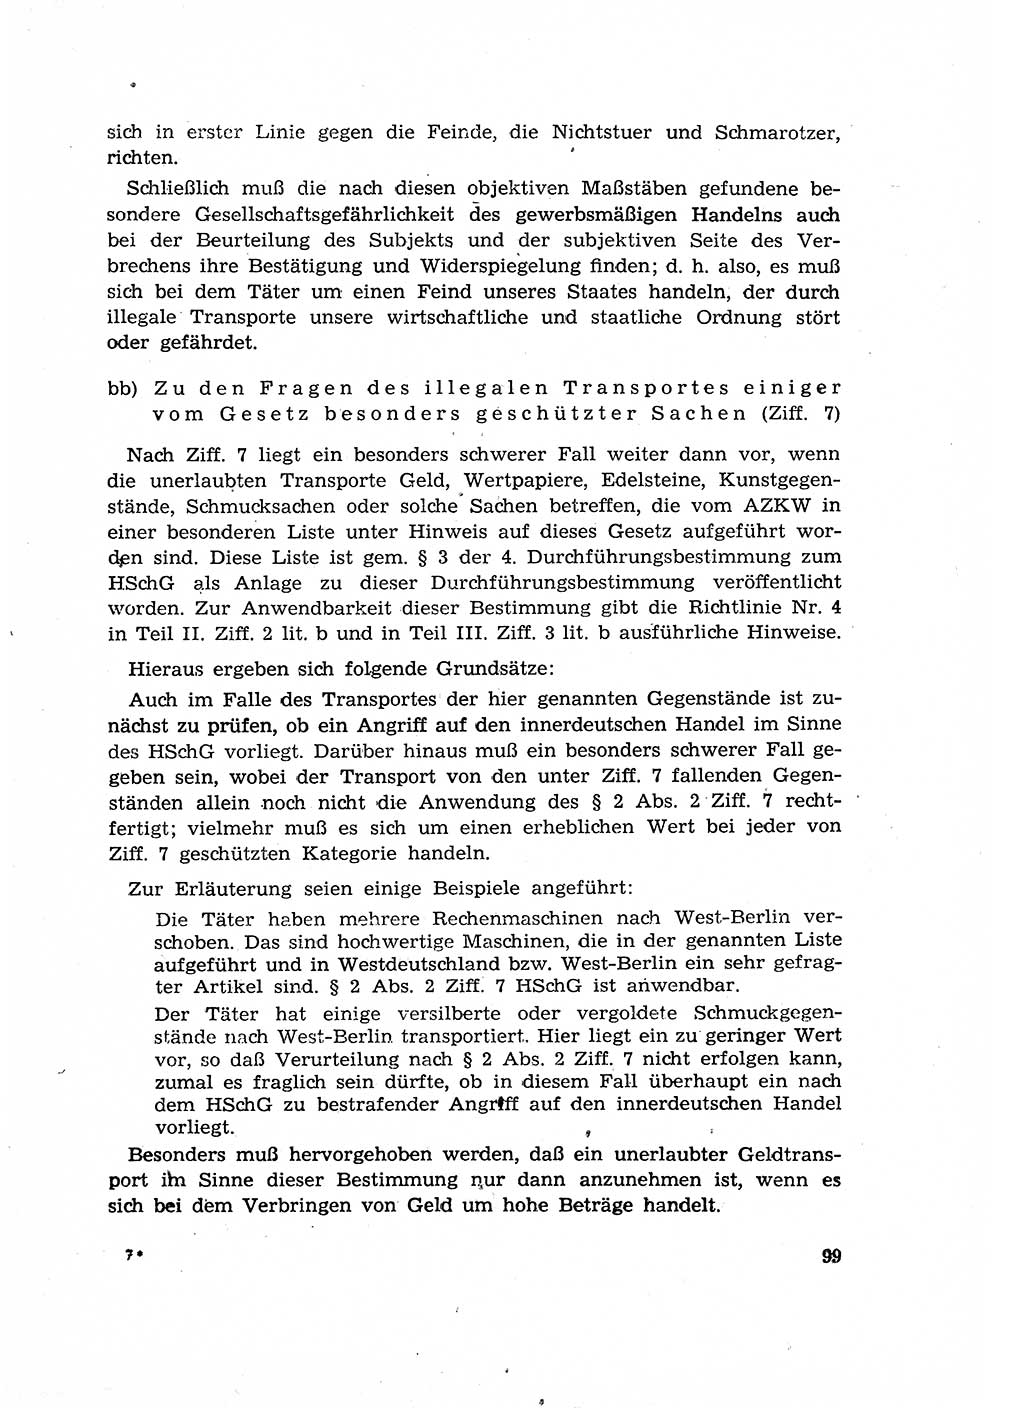 Materialien zum Strafrecht, Besonderer Teil [Deutsche Demokratische Republik (DDR)] 1955, Seite 99 (Mat. Strafr. BT DDR 1955, S. 99)